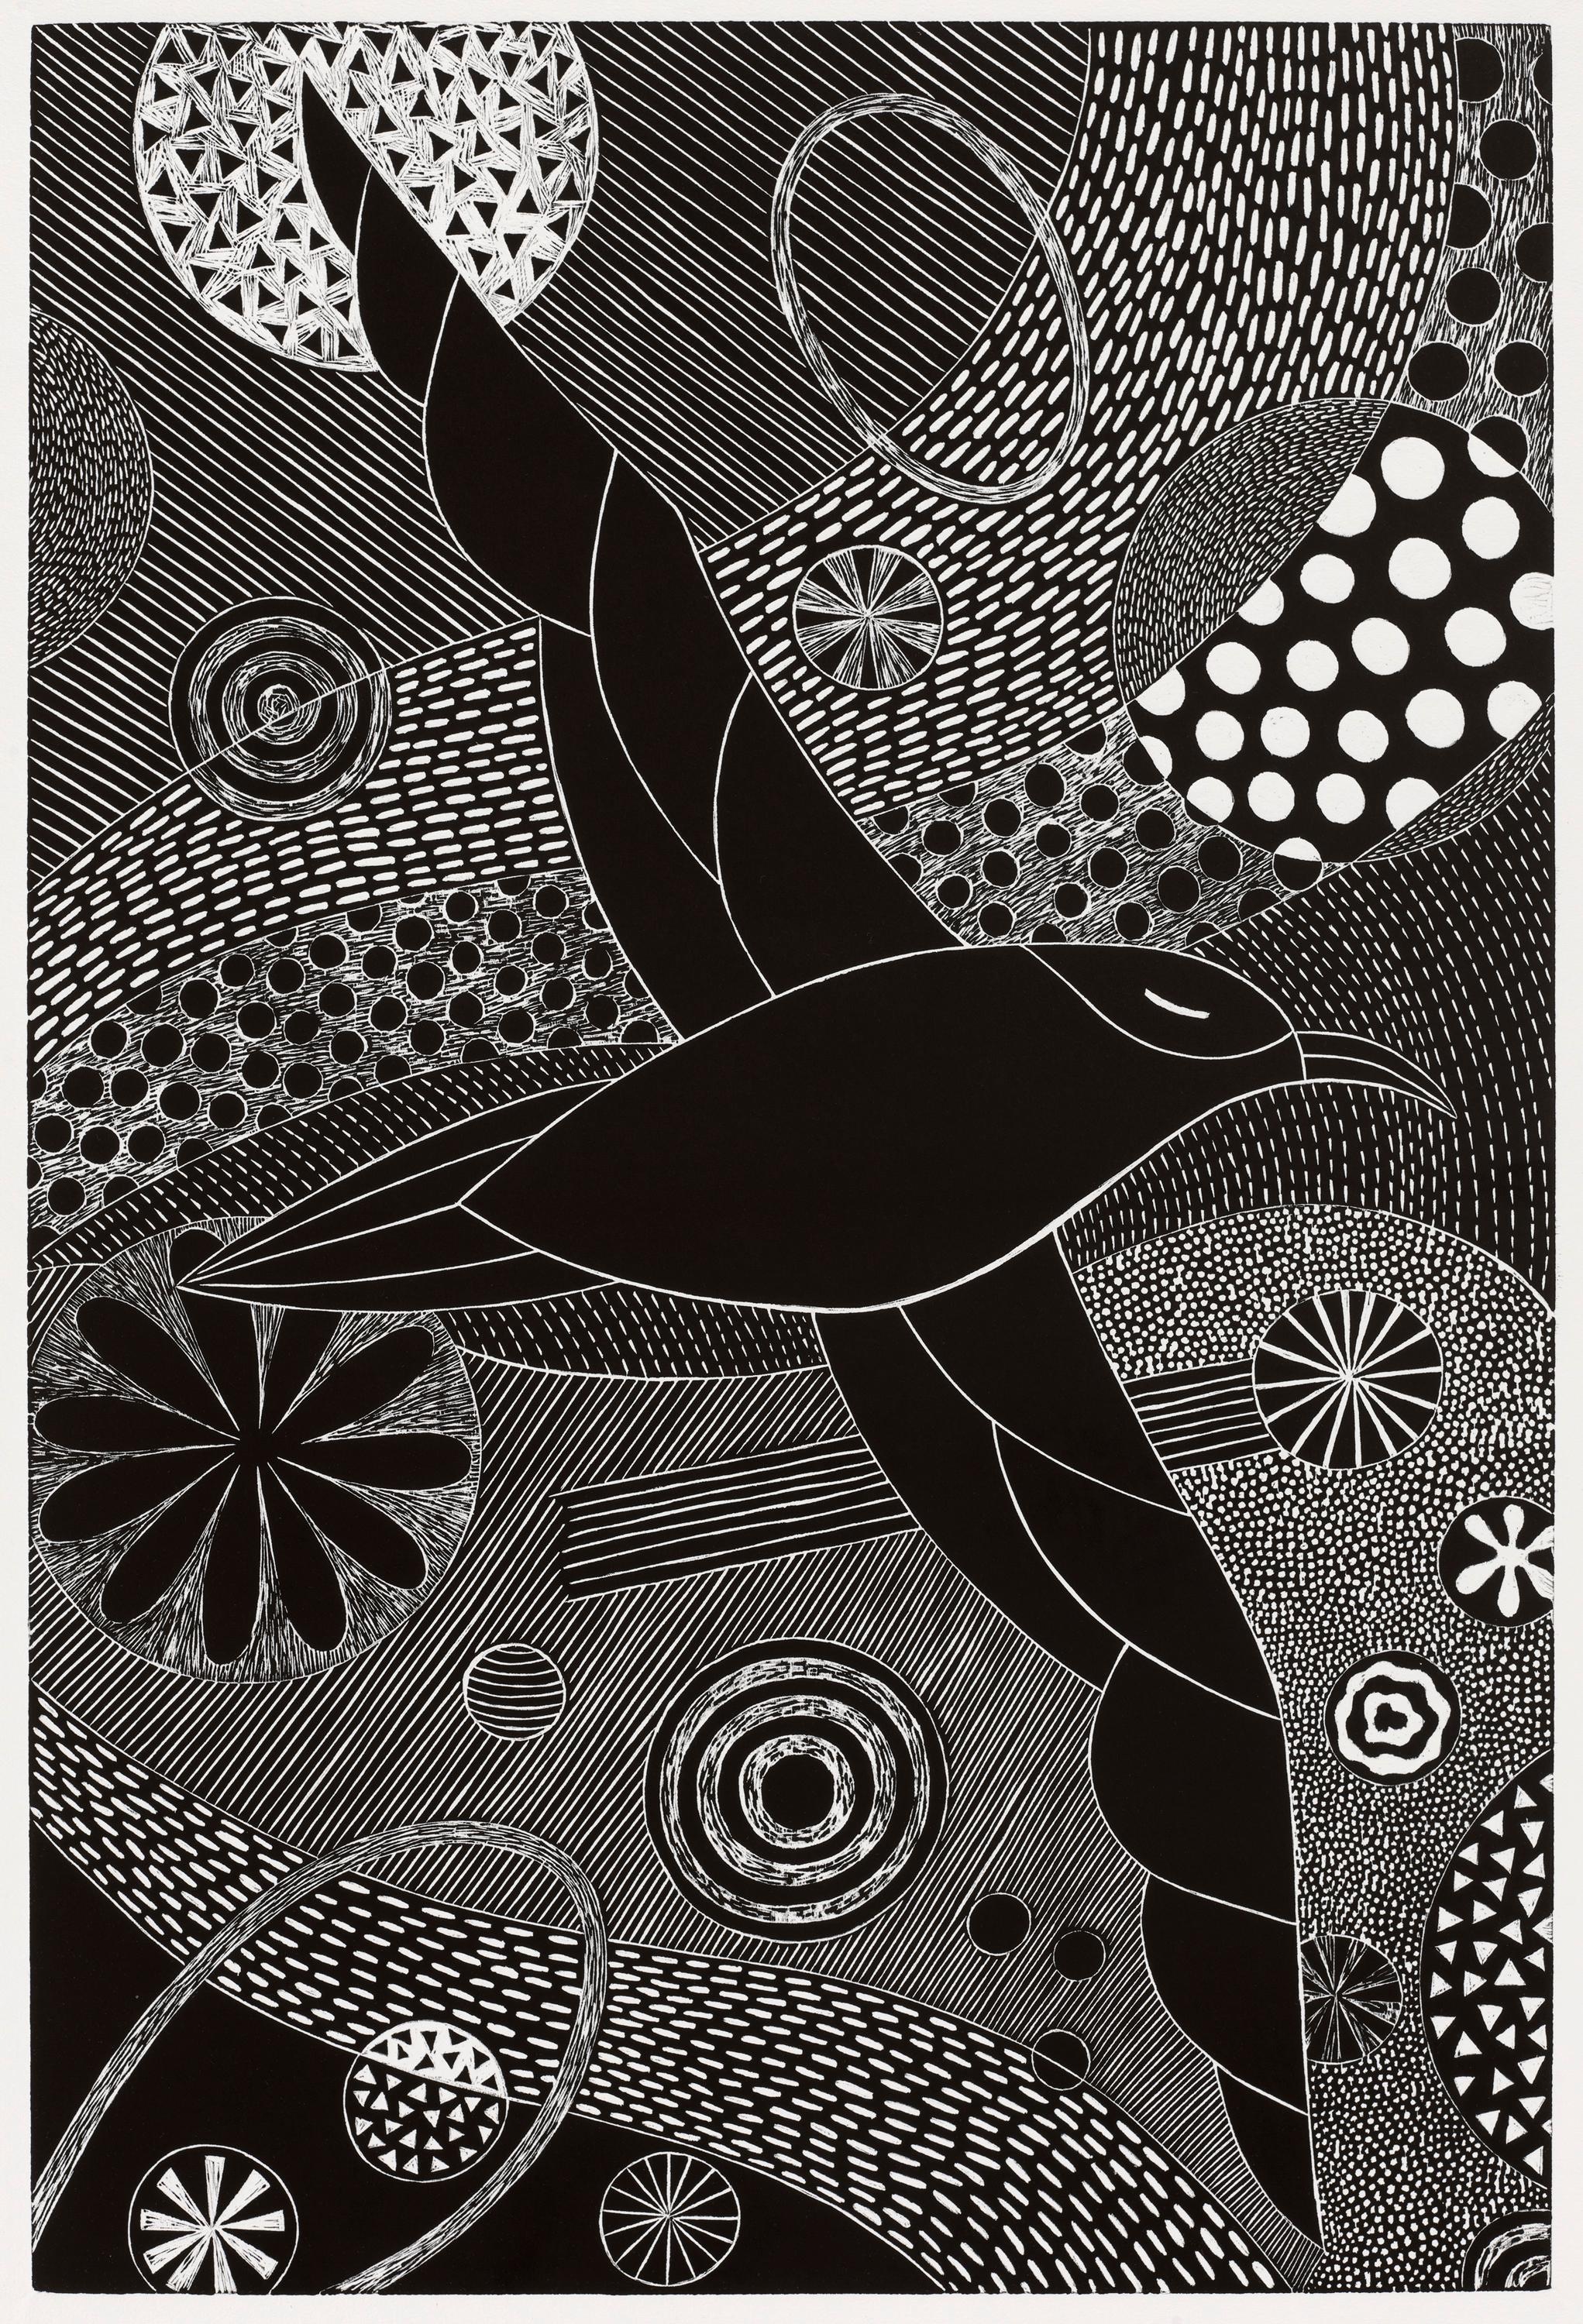 Animal Print Lisa Houck - L'envol et le surf  Gravure sur bois noir/blanc d'inspiration folklorique représentant un oiseau en vol